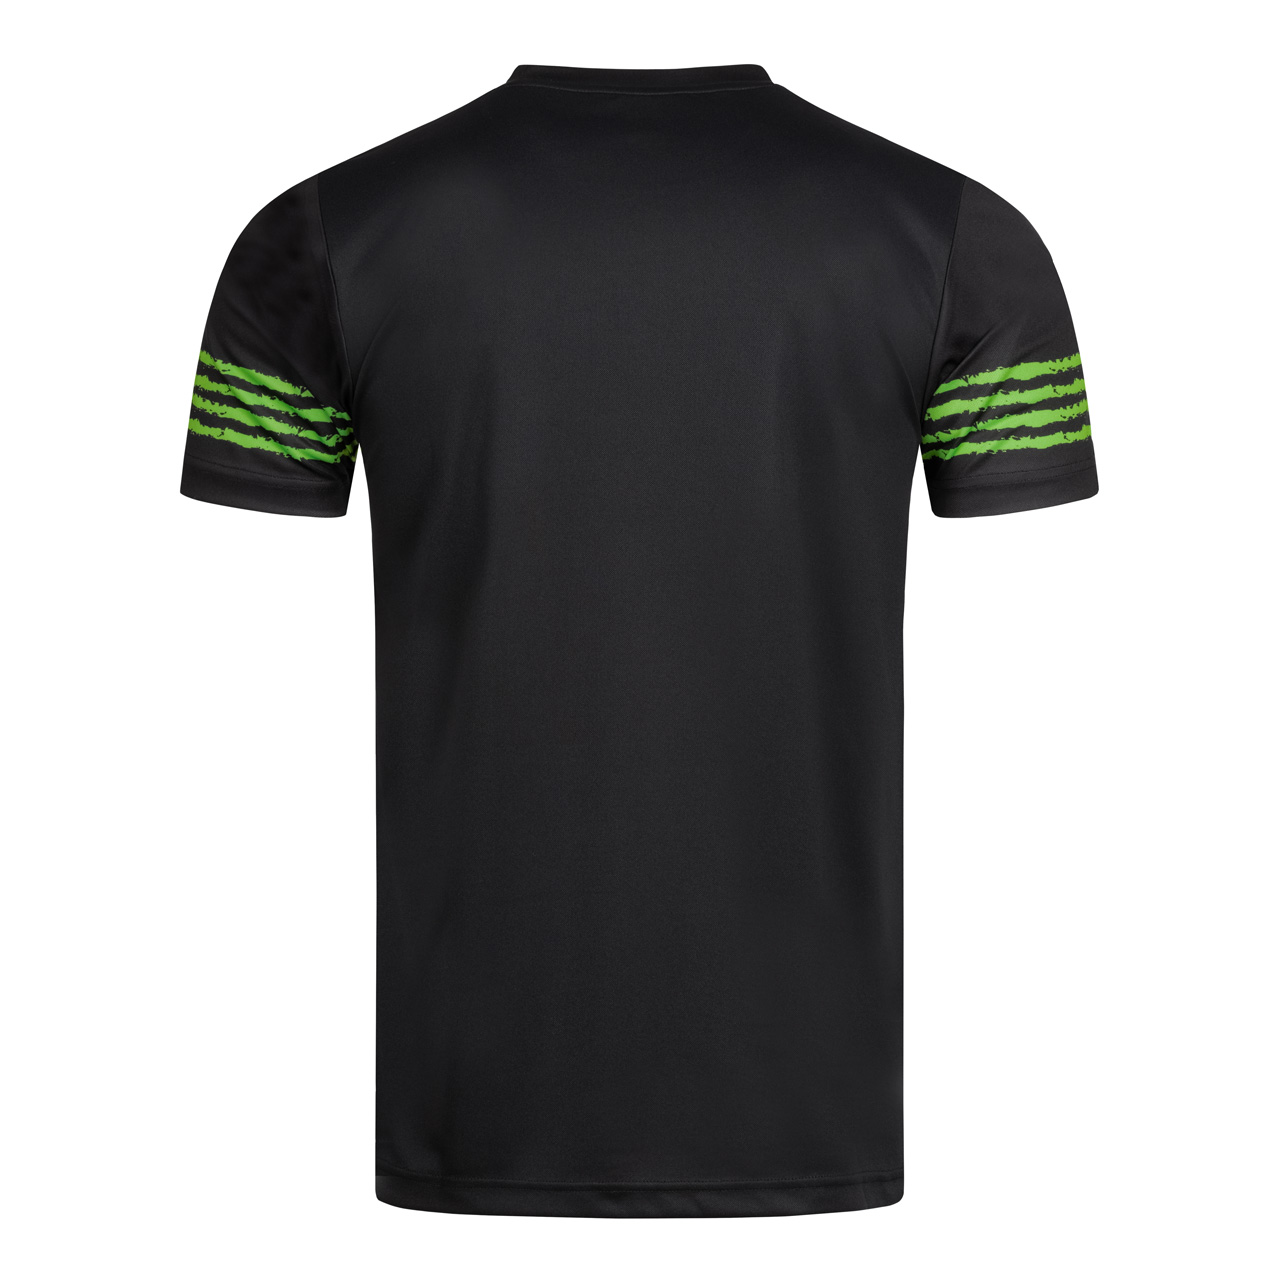 DONIC Tischtennis T-Shirt Tropic grün Rücken